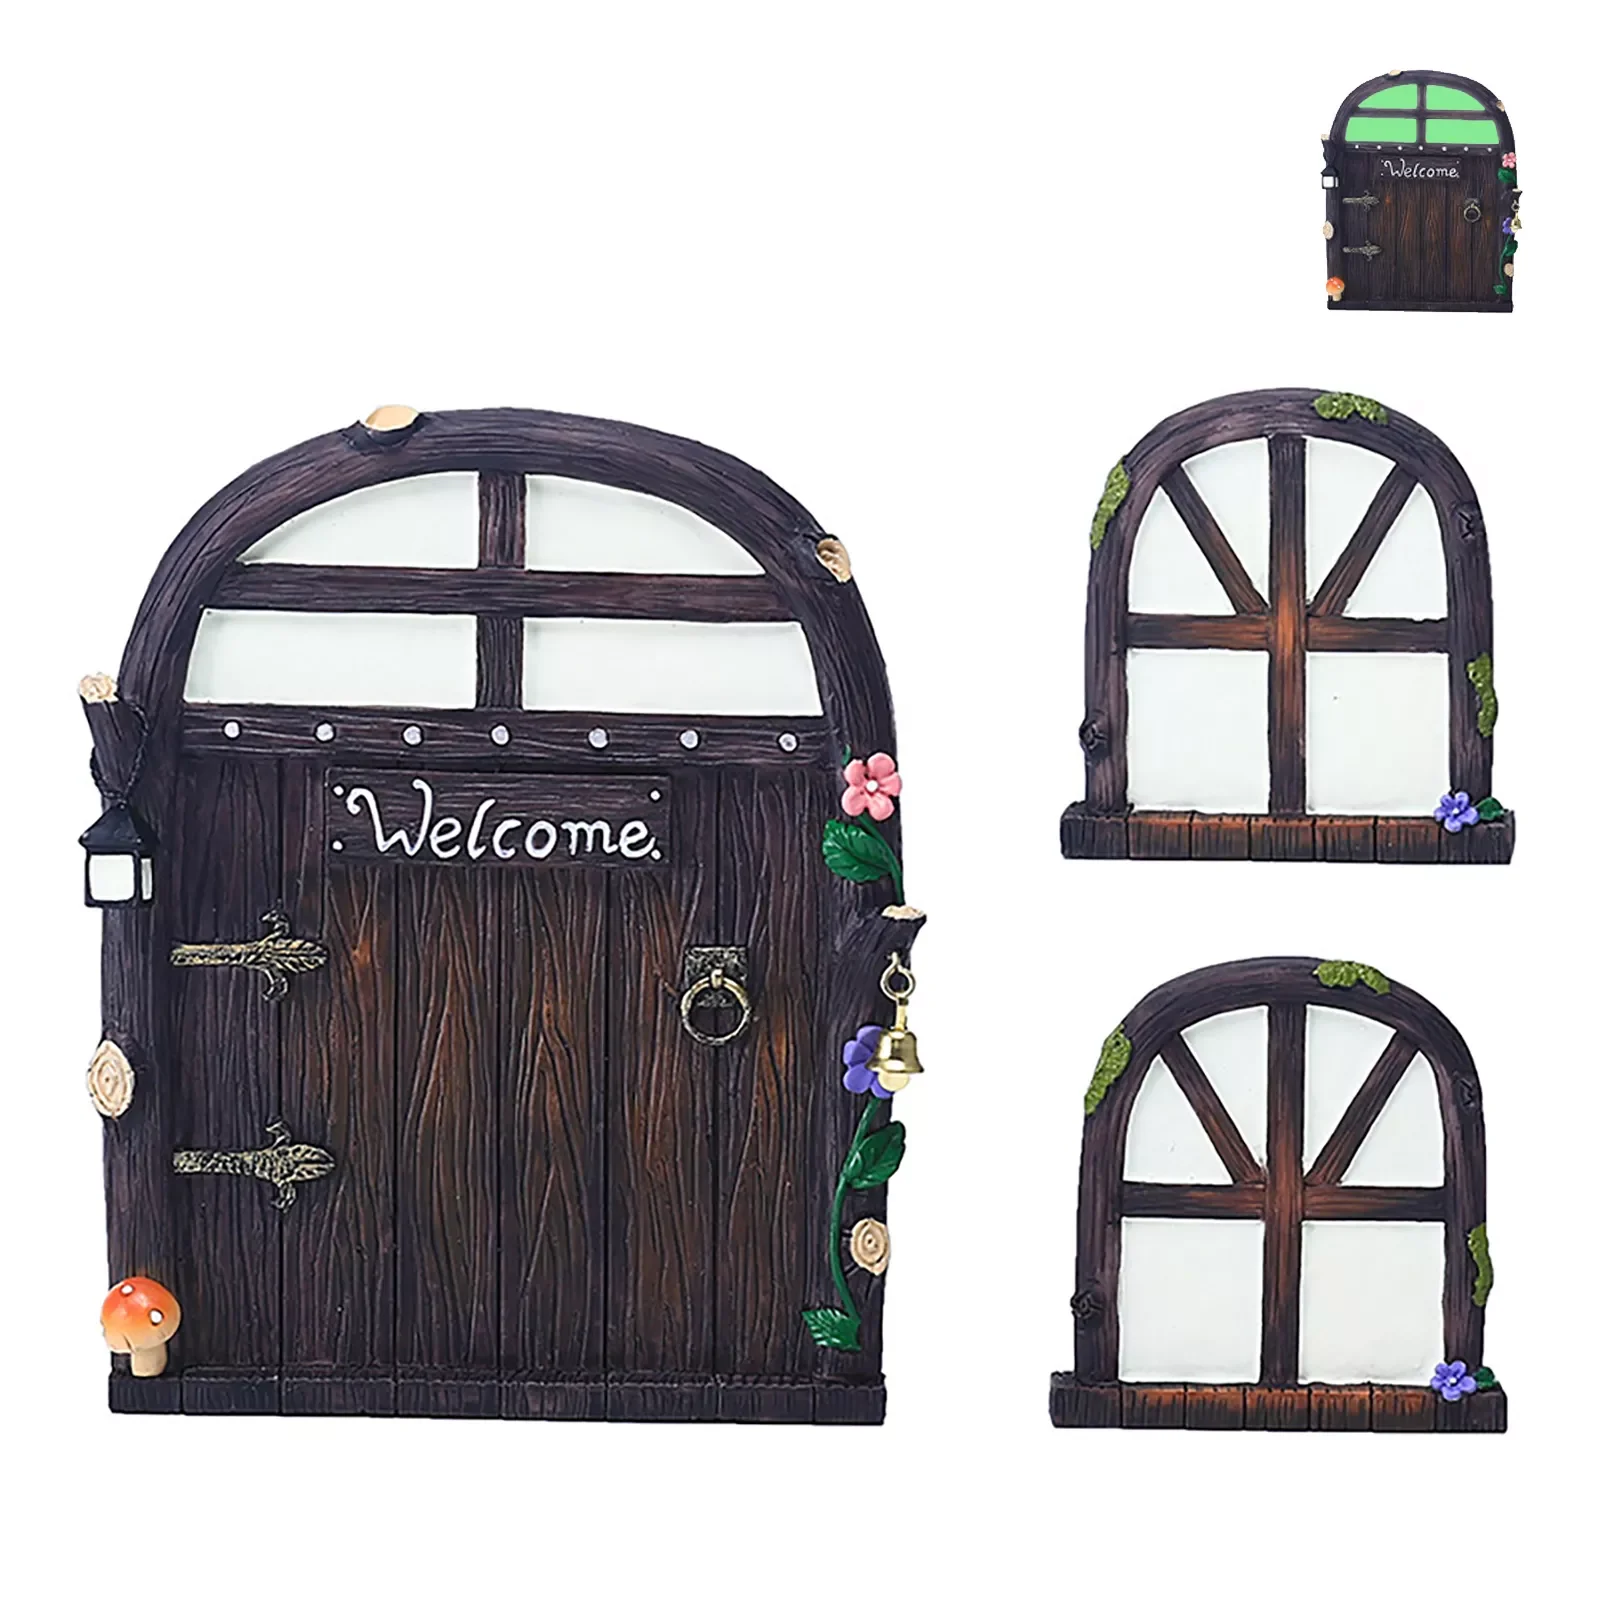 Door Glow In The Dark Fairy Gate Fairy Door And Tree Windows Fairy Garden Accessories Outdoor For Garden Tree Room